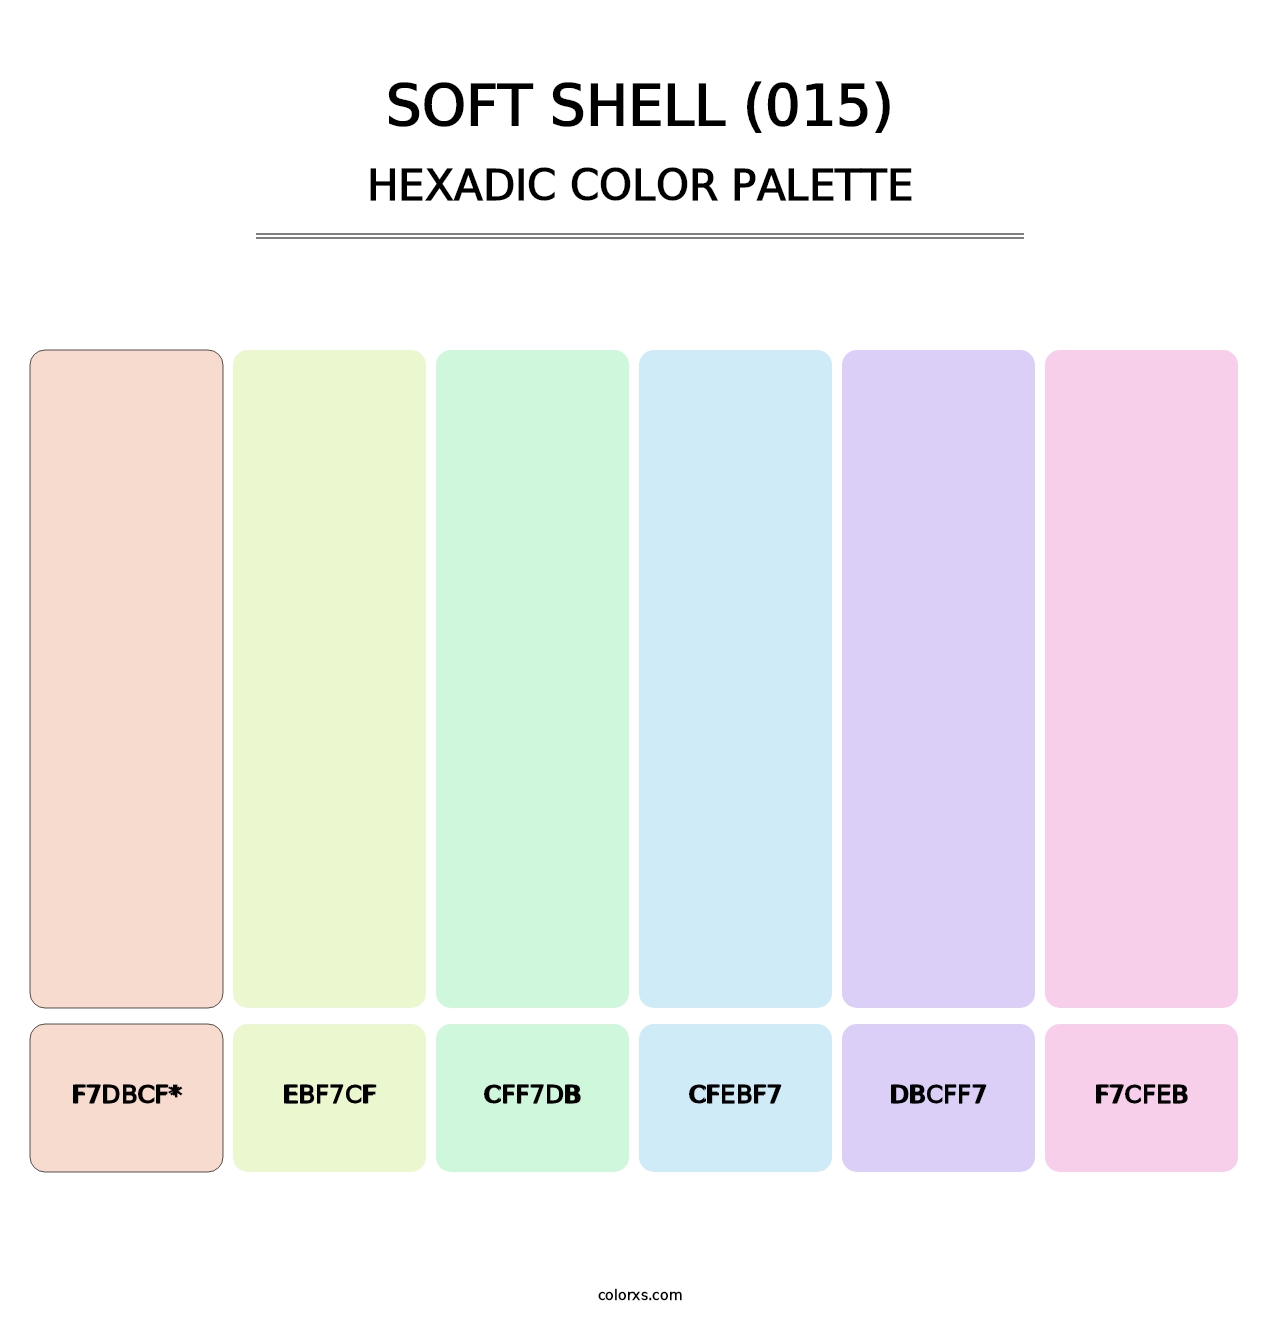 Soft Shell (015) - Hexadic Color Palette